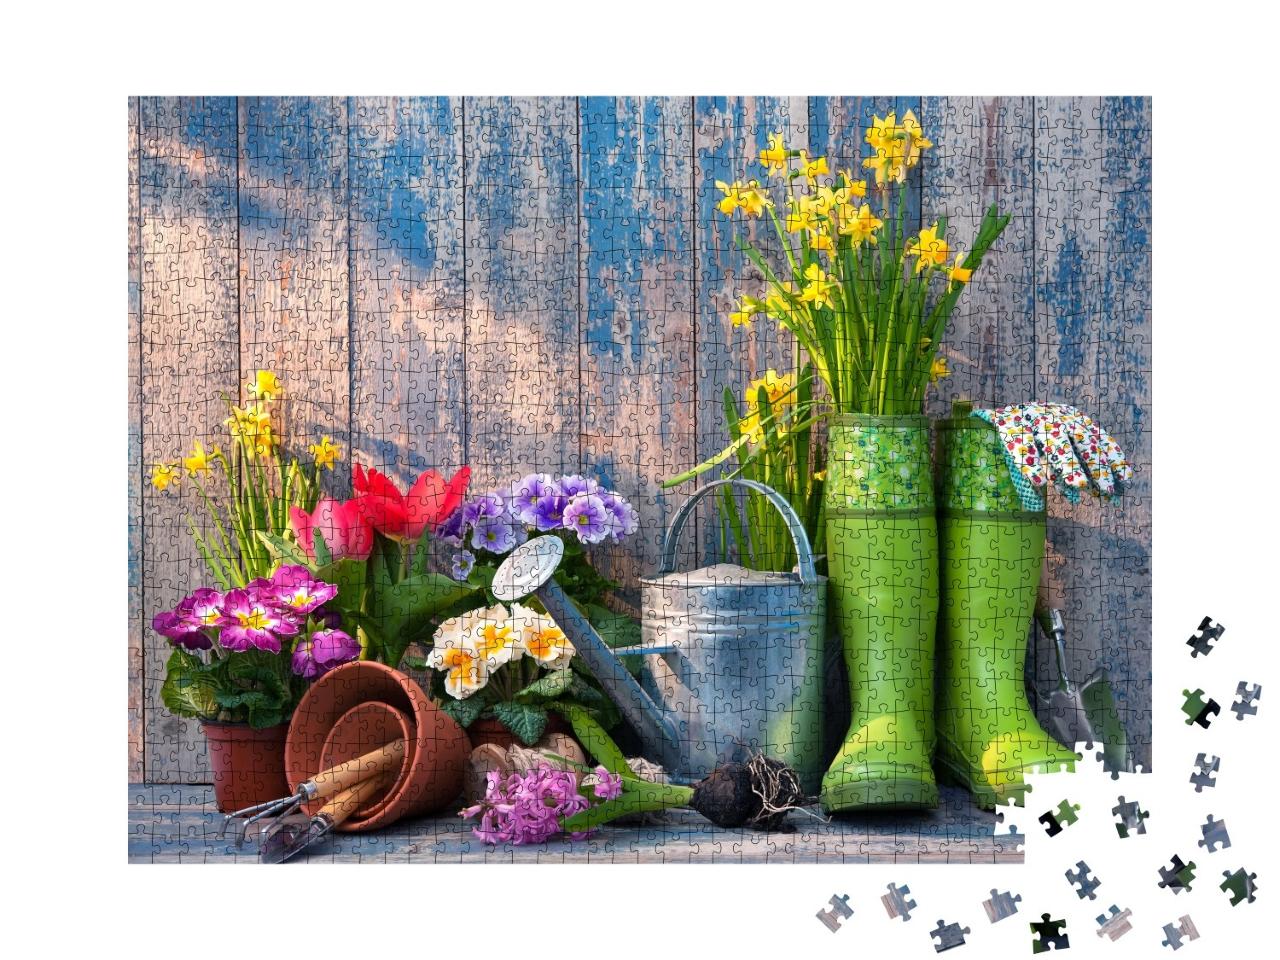 Puzzle de 1000 pièces « Outils de jardinage et fleurs sur la terrasse »